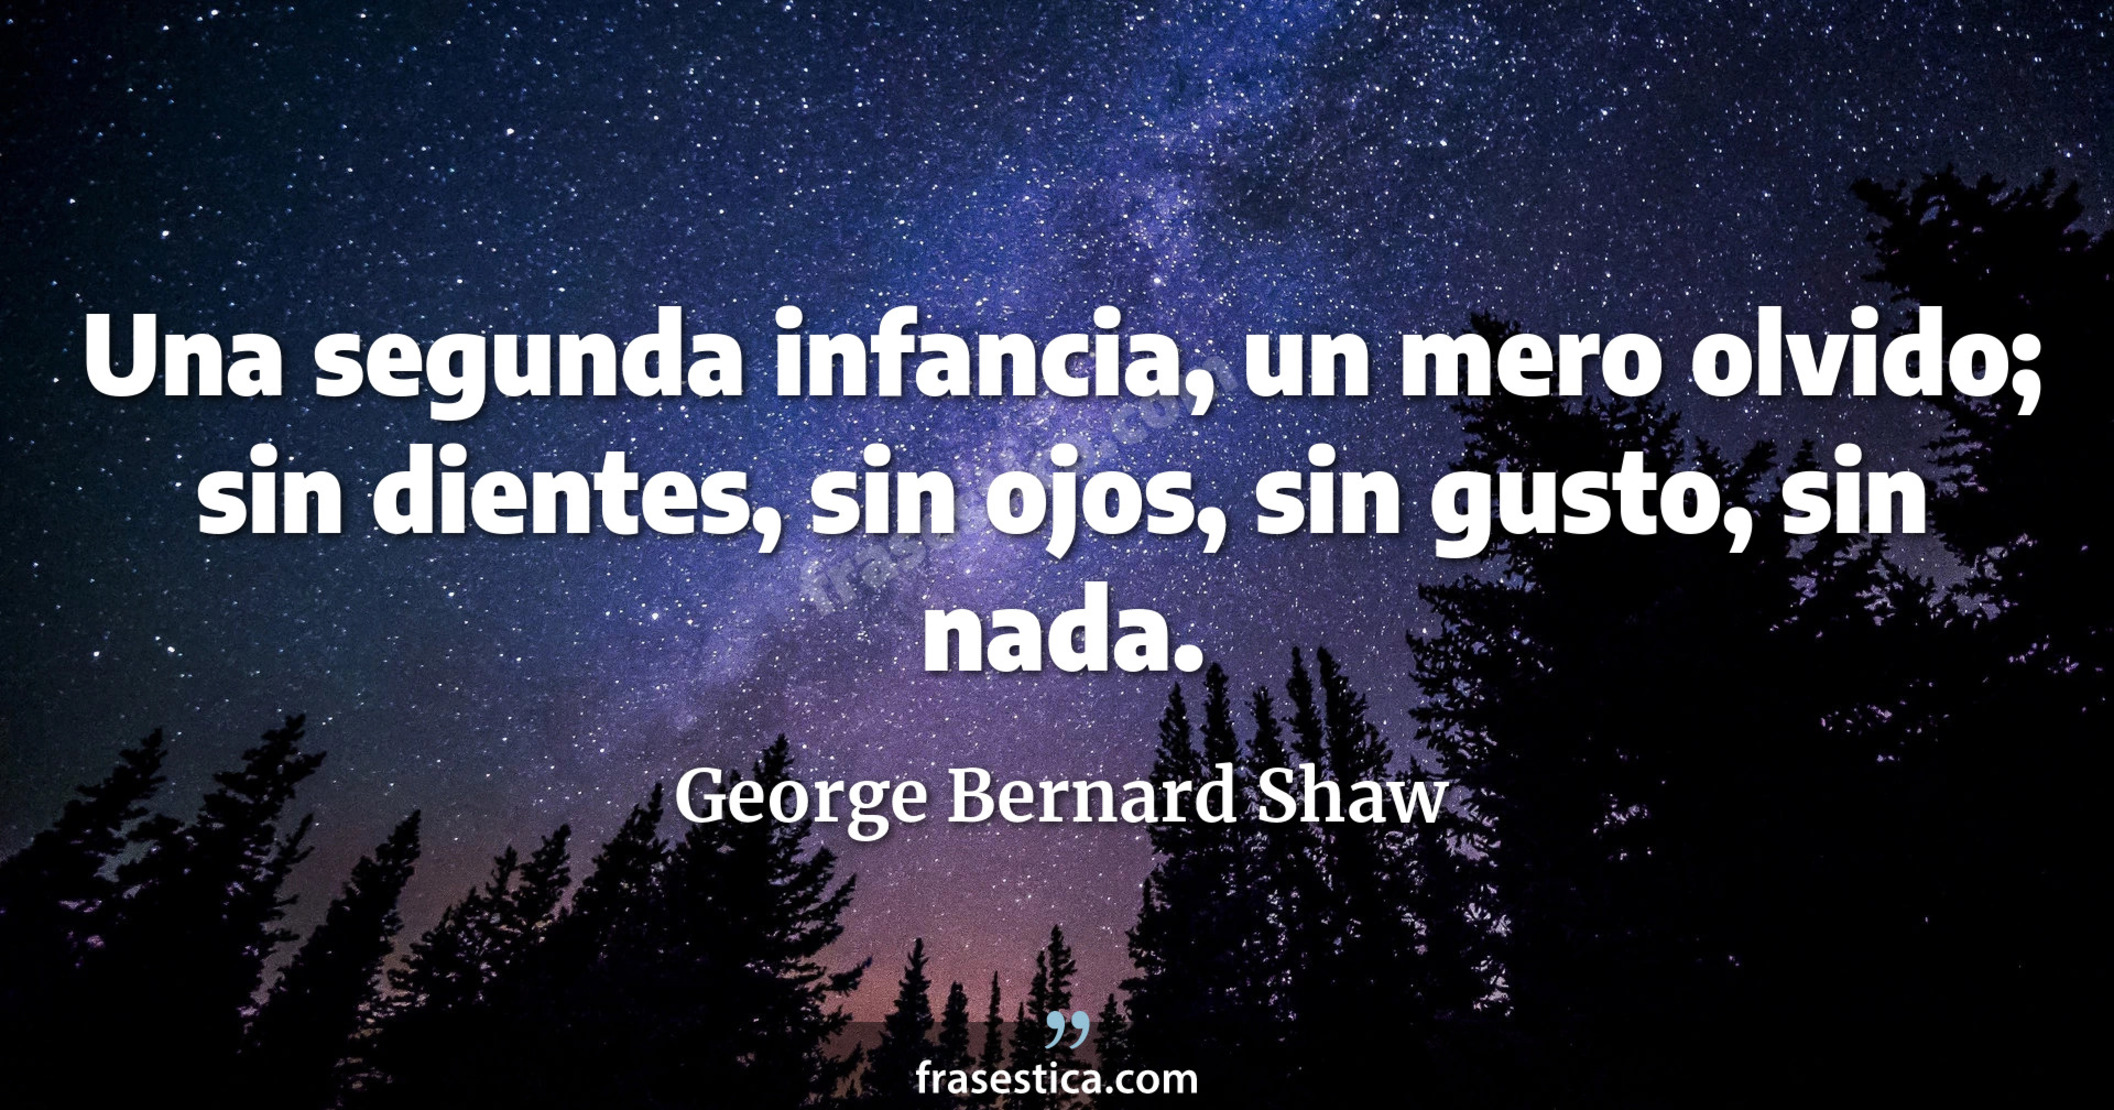 Una segunda infancia, un mero olvido; sin dientes, sin ojos, sin gusto, sin nada. - George Bernard Shaw